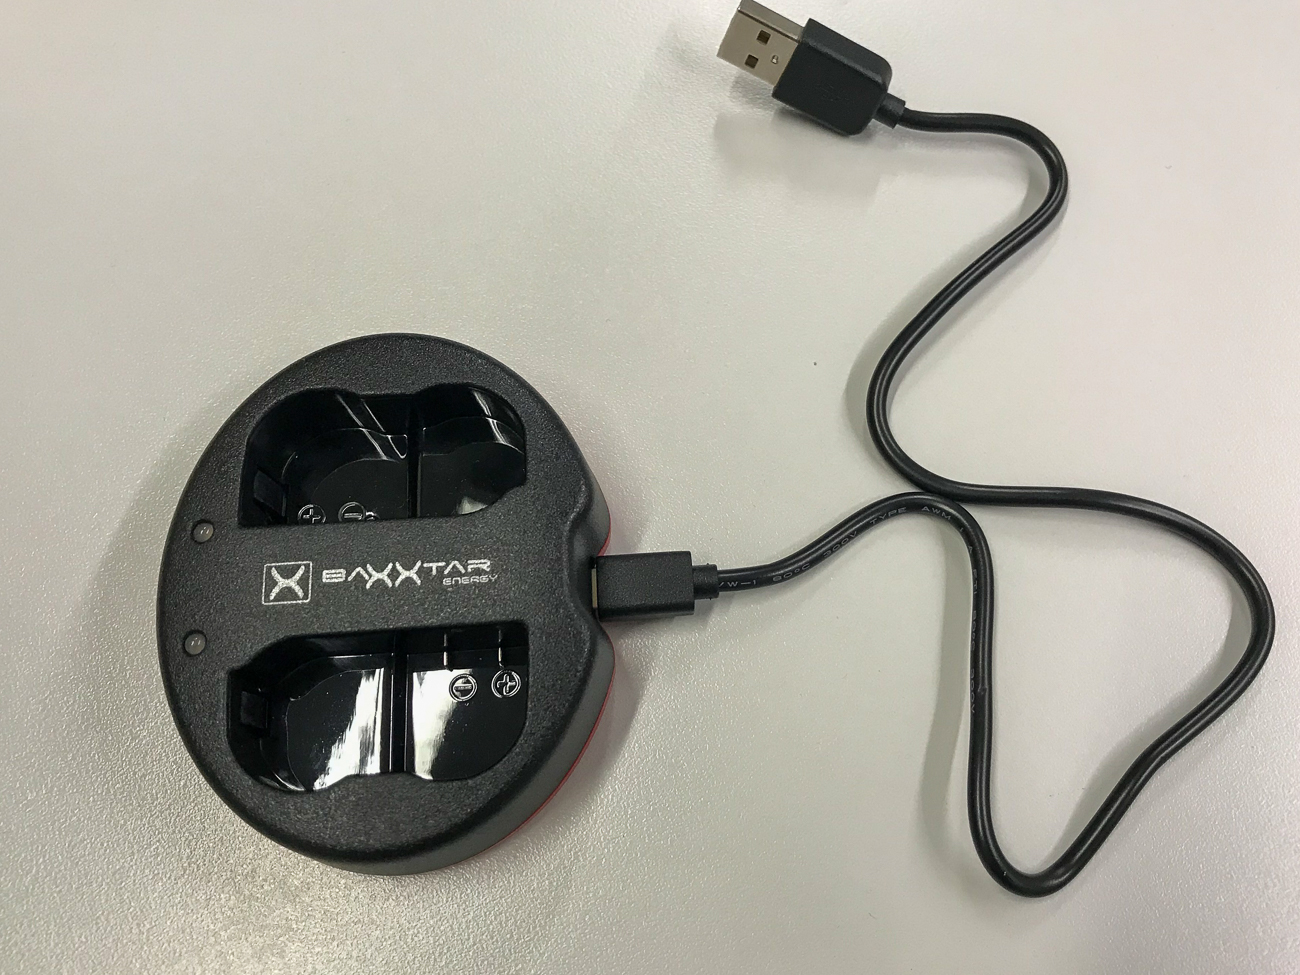 Baxxtar USB-Doppel-Ladegerät, um die Akkus auch im Auto oder mit einer Powerbank laden zu können. Ein ähnliches Gerät habe ich auch für meine Canon Kameras und gute Erfahrungen damit gemacht